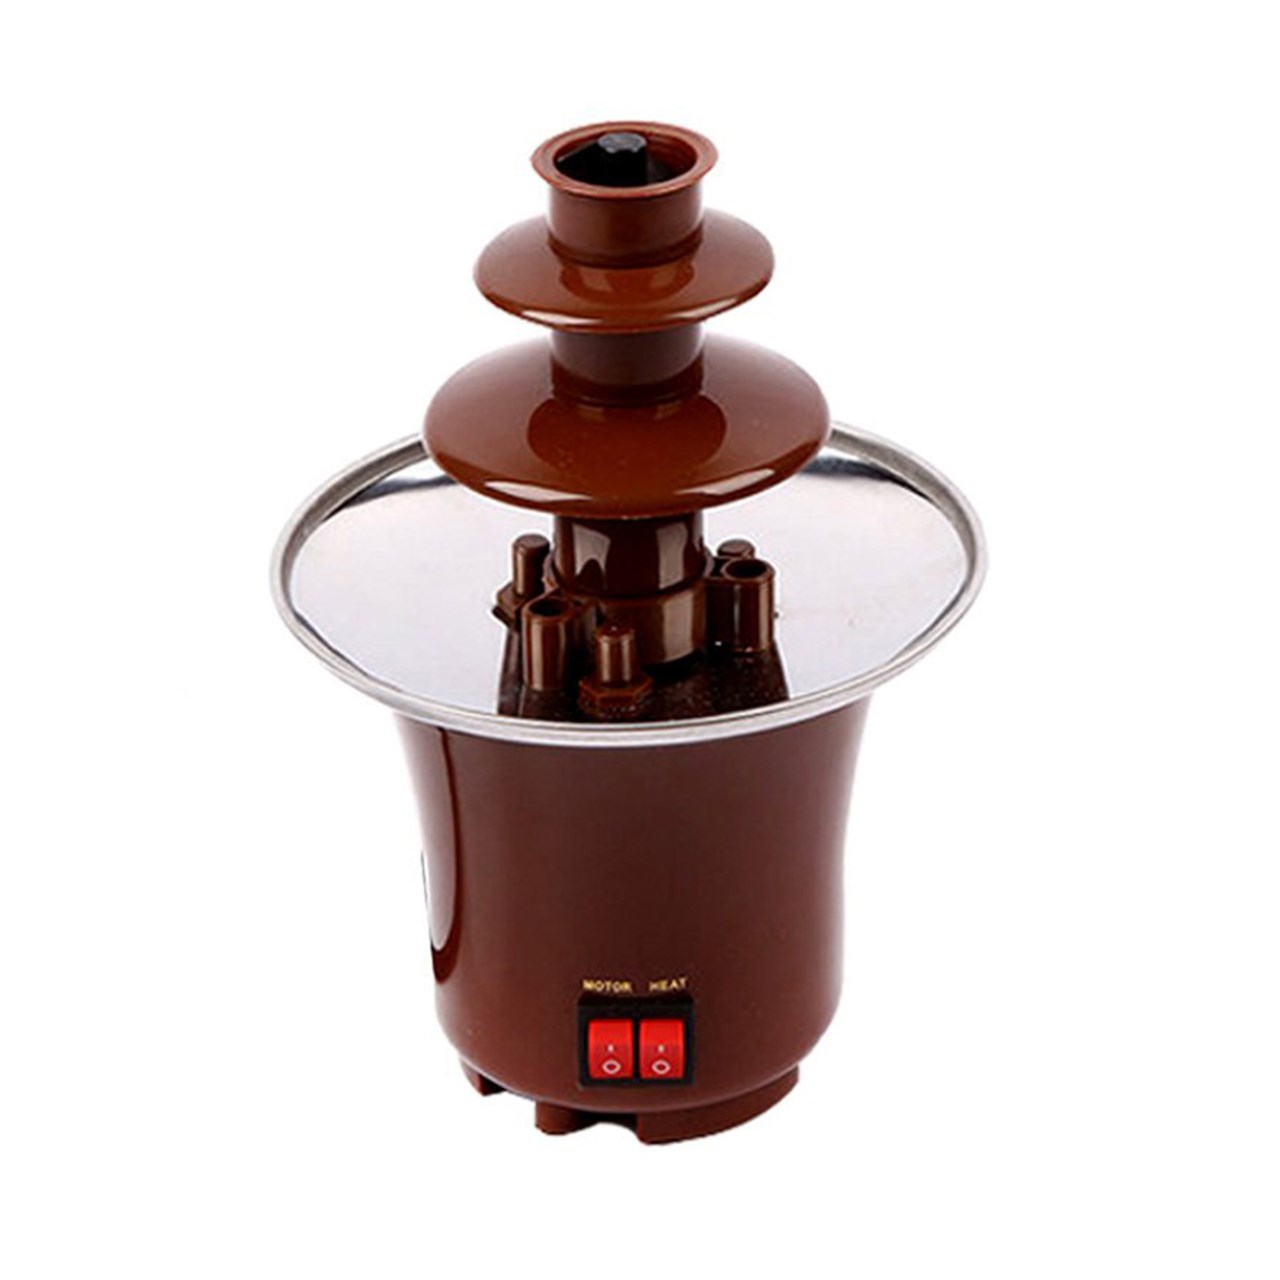 دستگاه آب کننده شکلات مدل 002